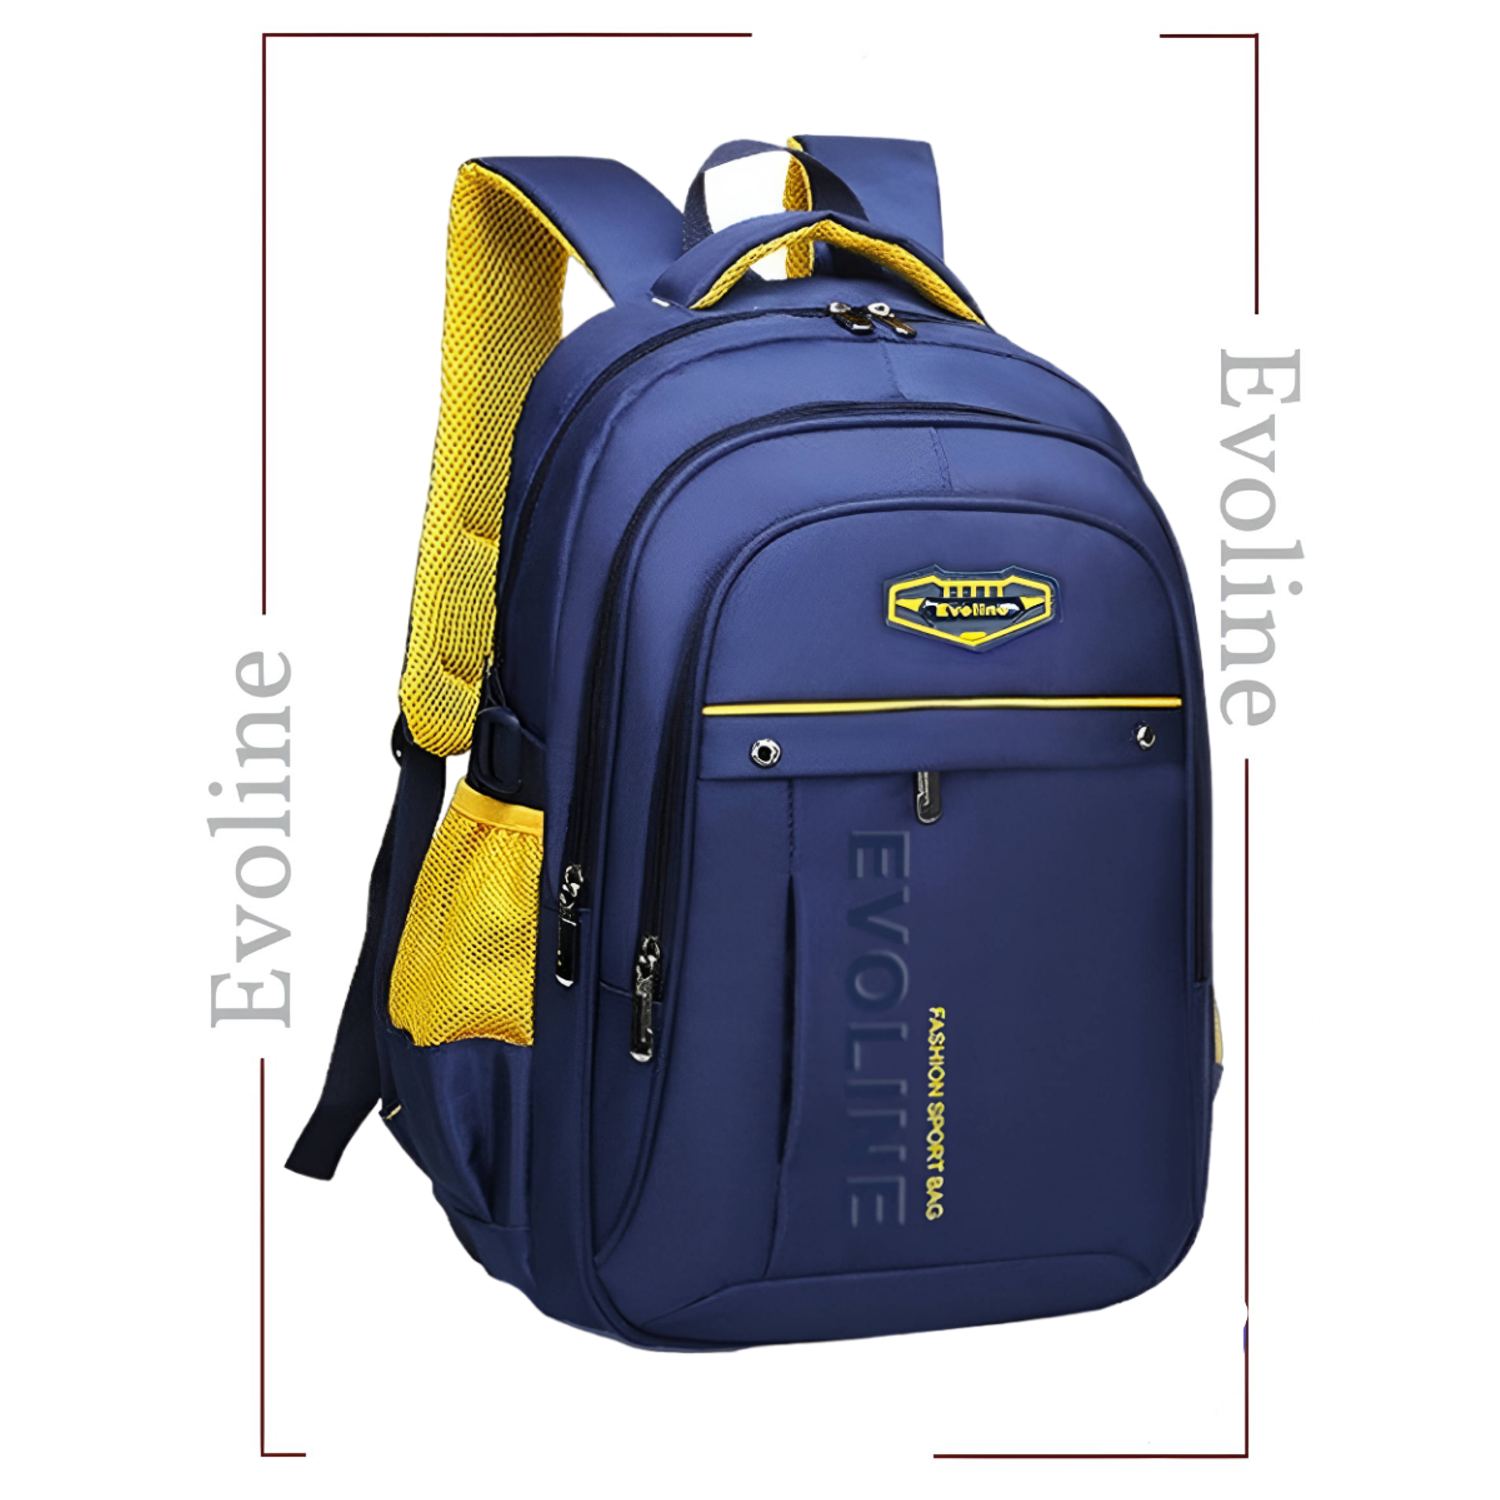 Рюкзак школьный Evoline синий желтый EVO-157-1 - фото 1